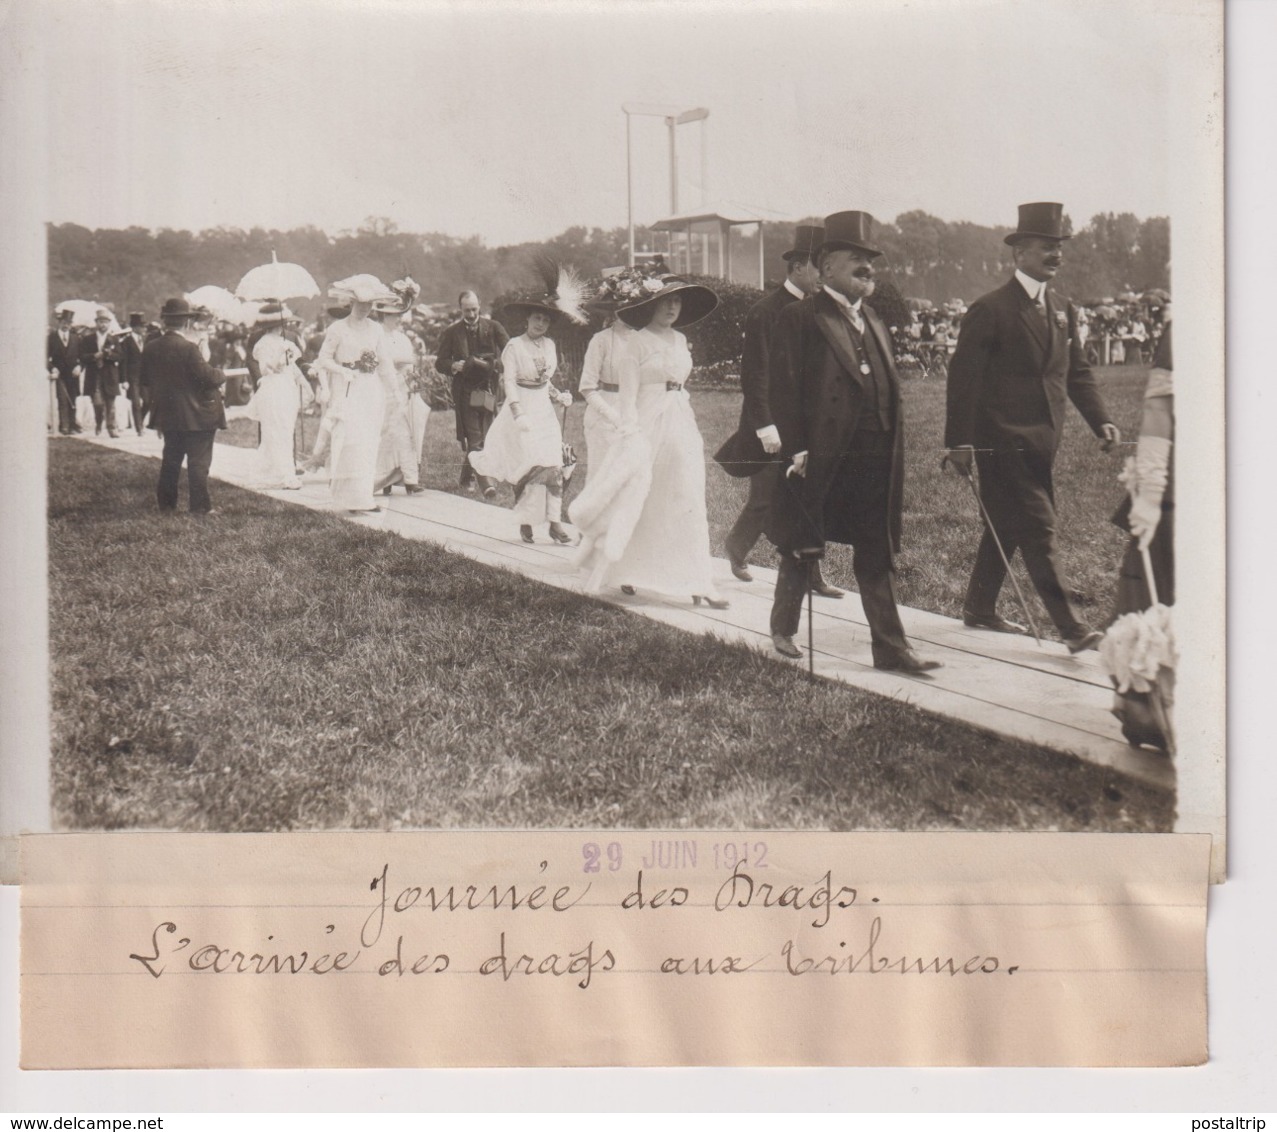 JOURNÉE DES DRAGS L'ARRIVÉE DES DRAGS AUX TRIBUNES   18*13CM Maurice-Louis BRANGER PARÍS (1874-1950) - Deportes